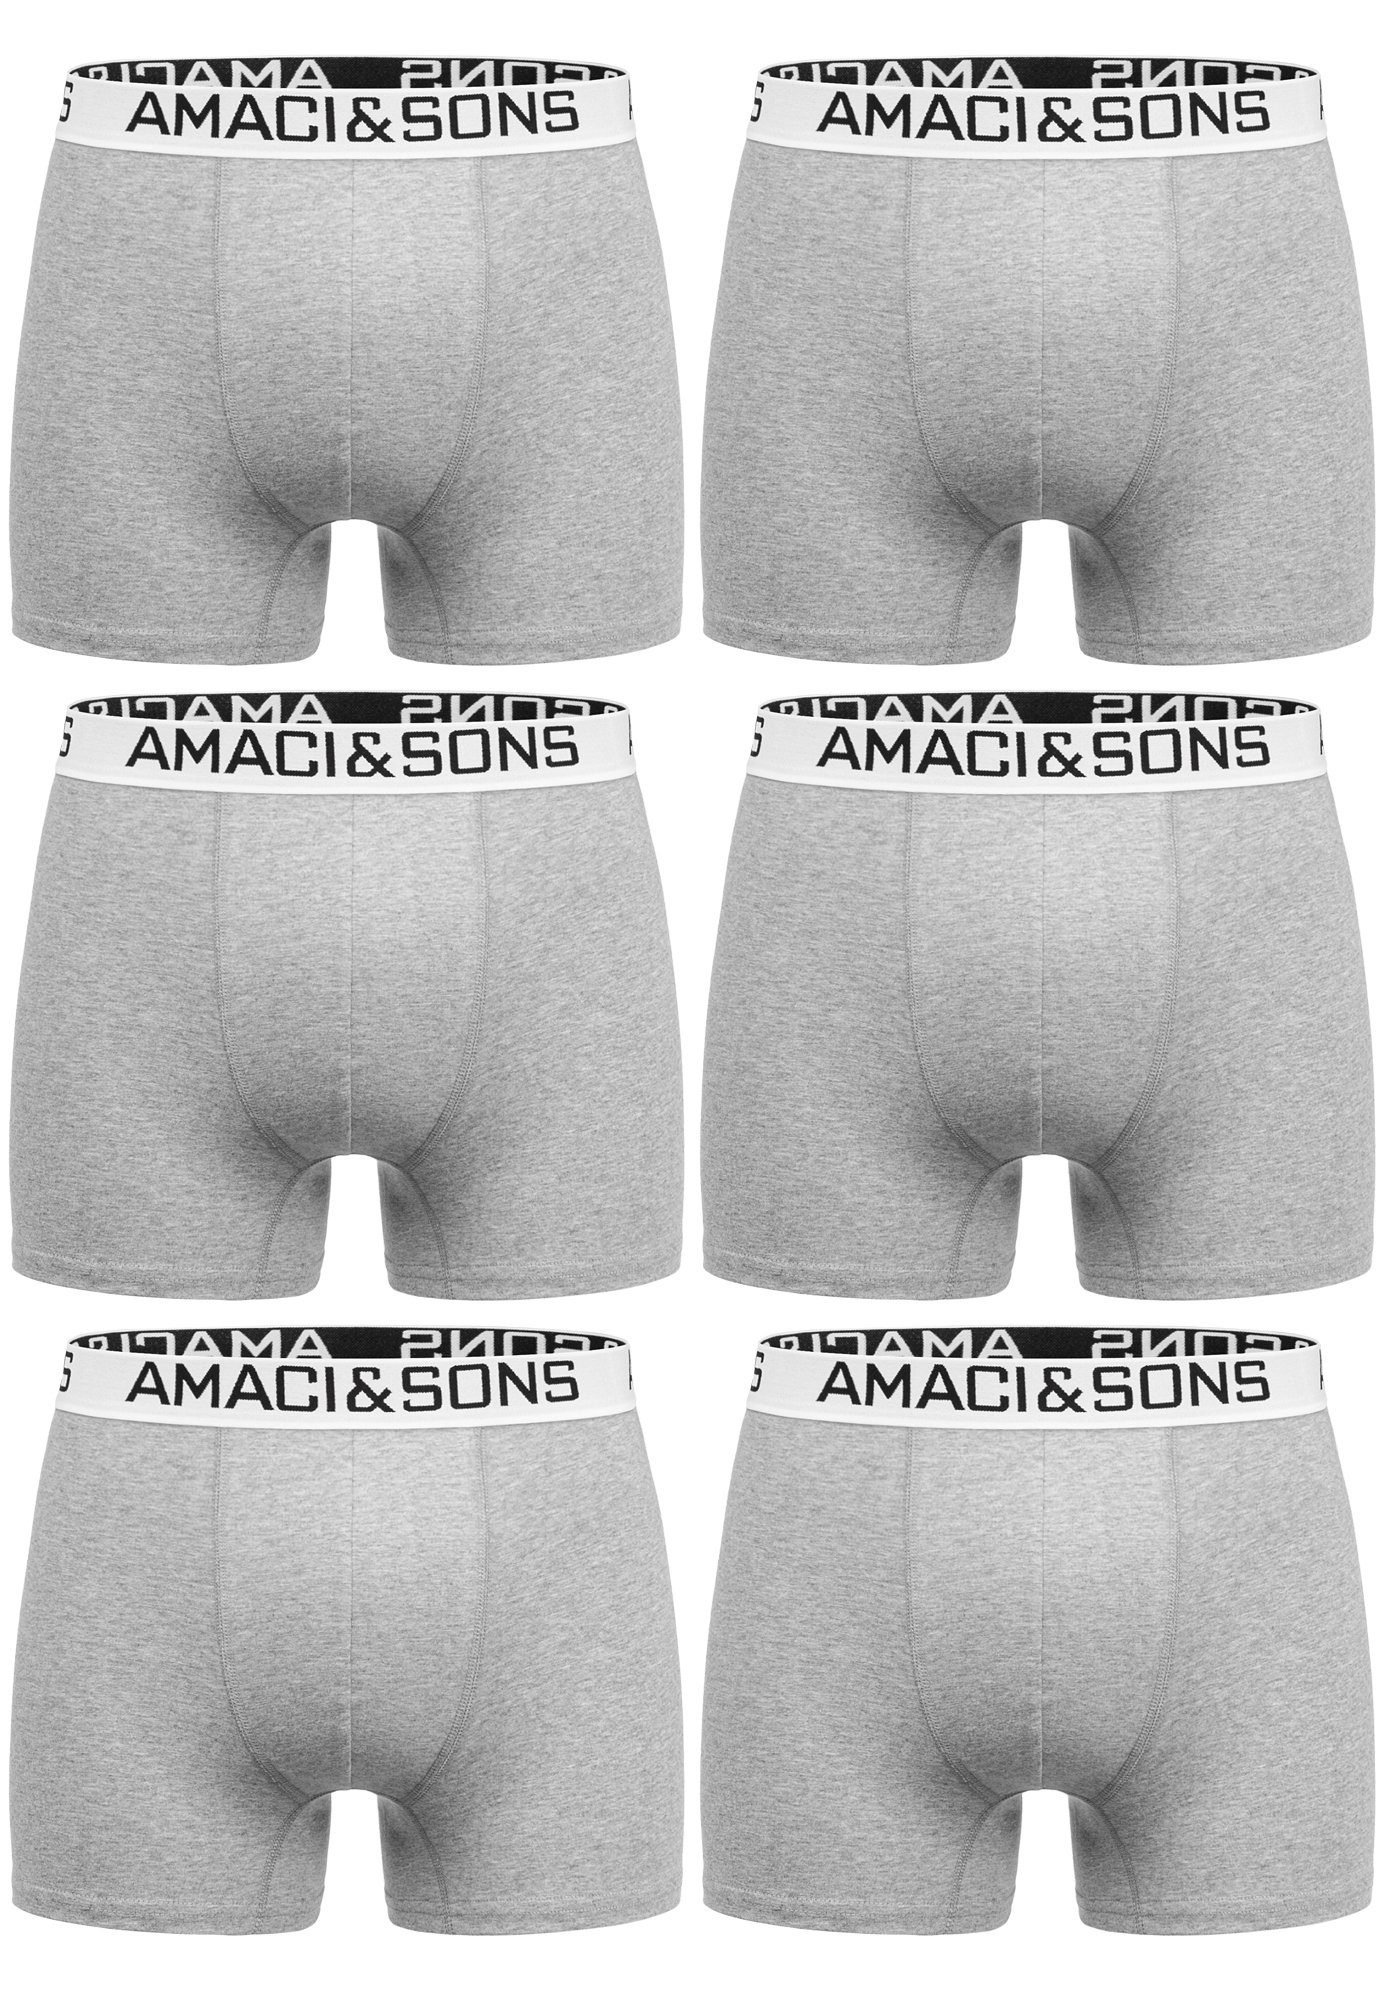 Amaci&Sons Boxershorts WESTON 6er Pack Boxershorts (6er-Pack) Herren Baumwolle Männer Unterhose Unterwäsche Hellgrau/Weiß